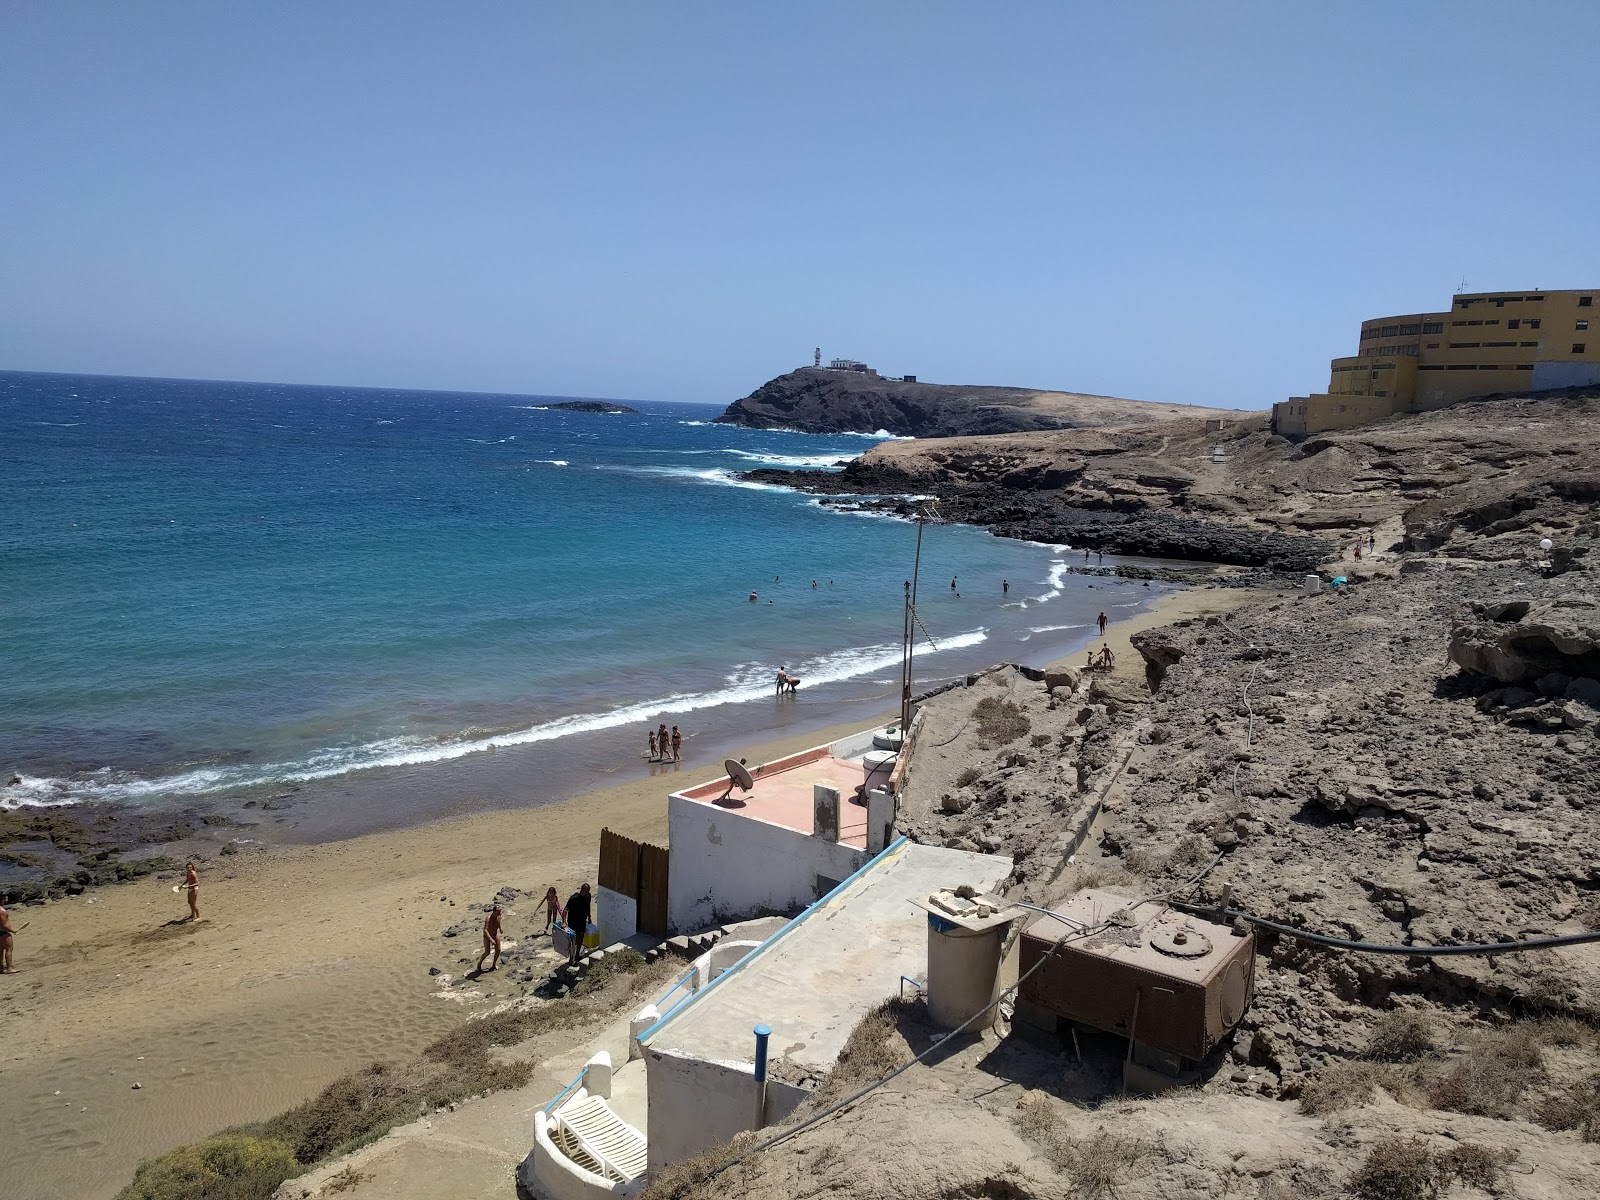 Playa del Cabron'in fotoğrafı kahverengi kum yüzey ile